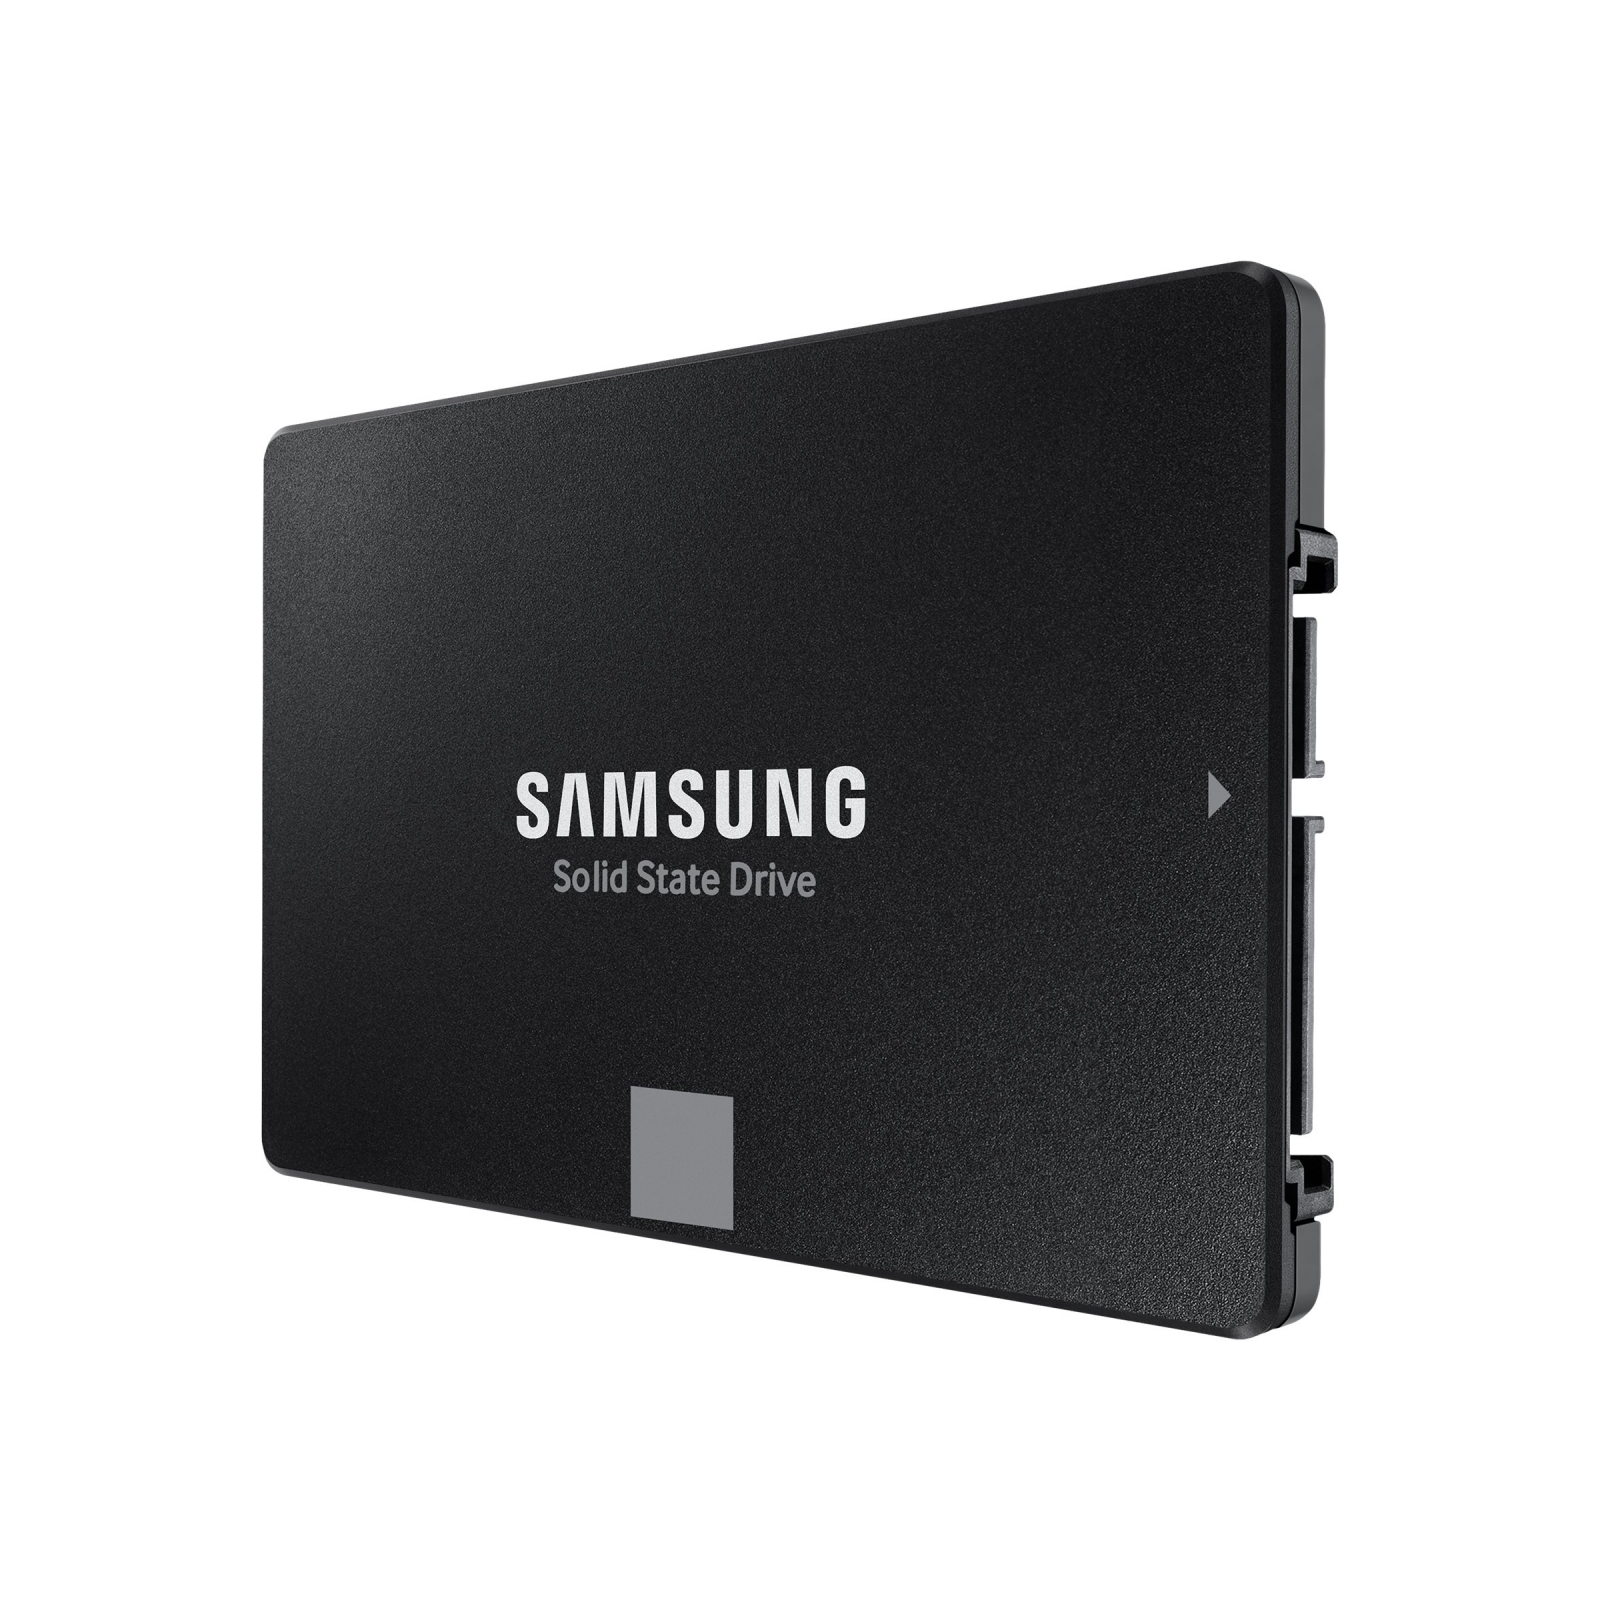 SAMSUNG 870 EVO 1 TB, intern SATA SSD 6 GB/s, SSD, (MZ-77E1T0B/EU), TB, Zoll 1 2.5